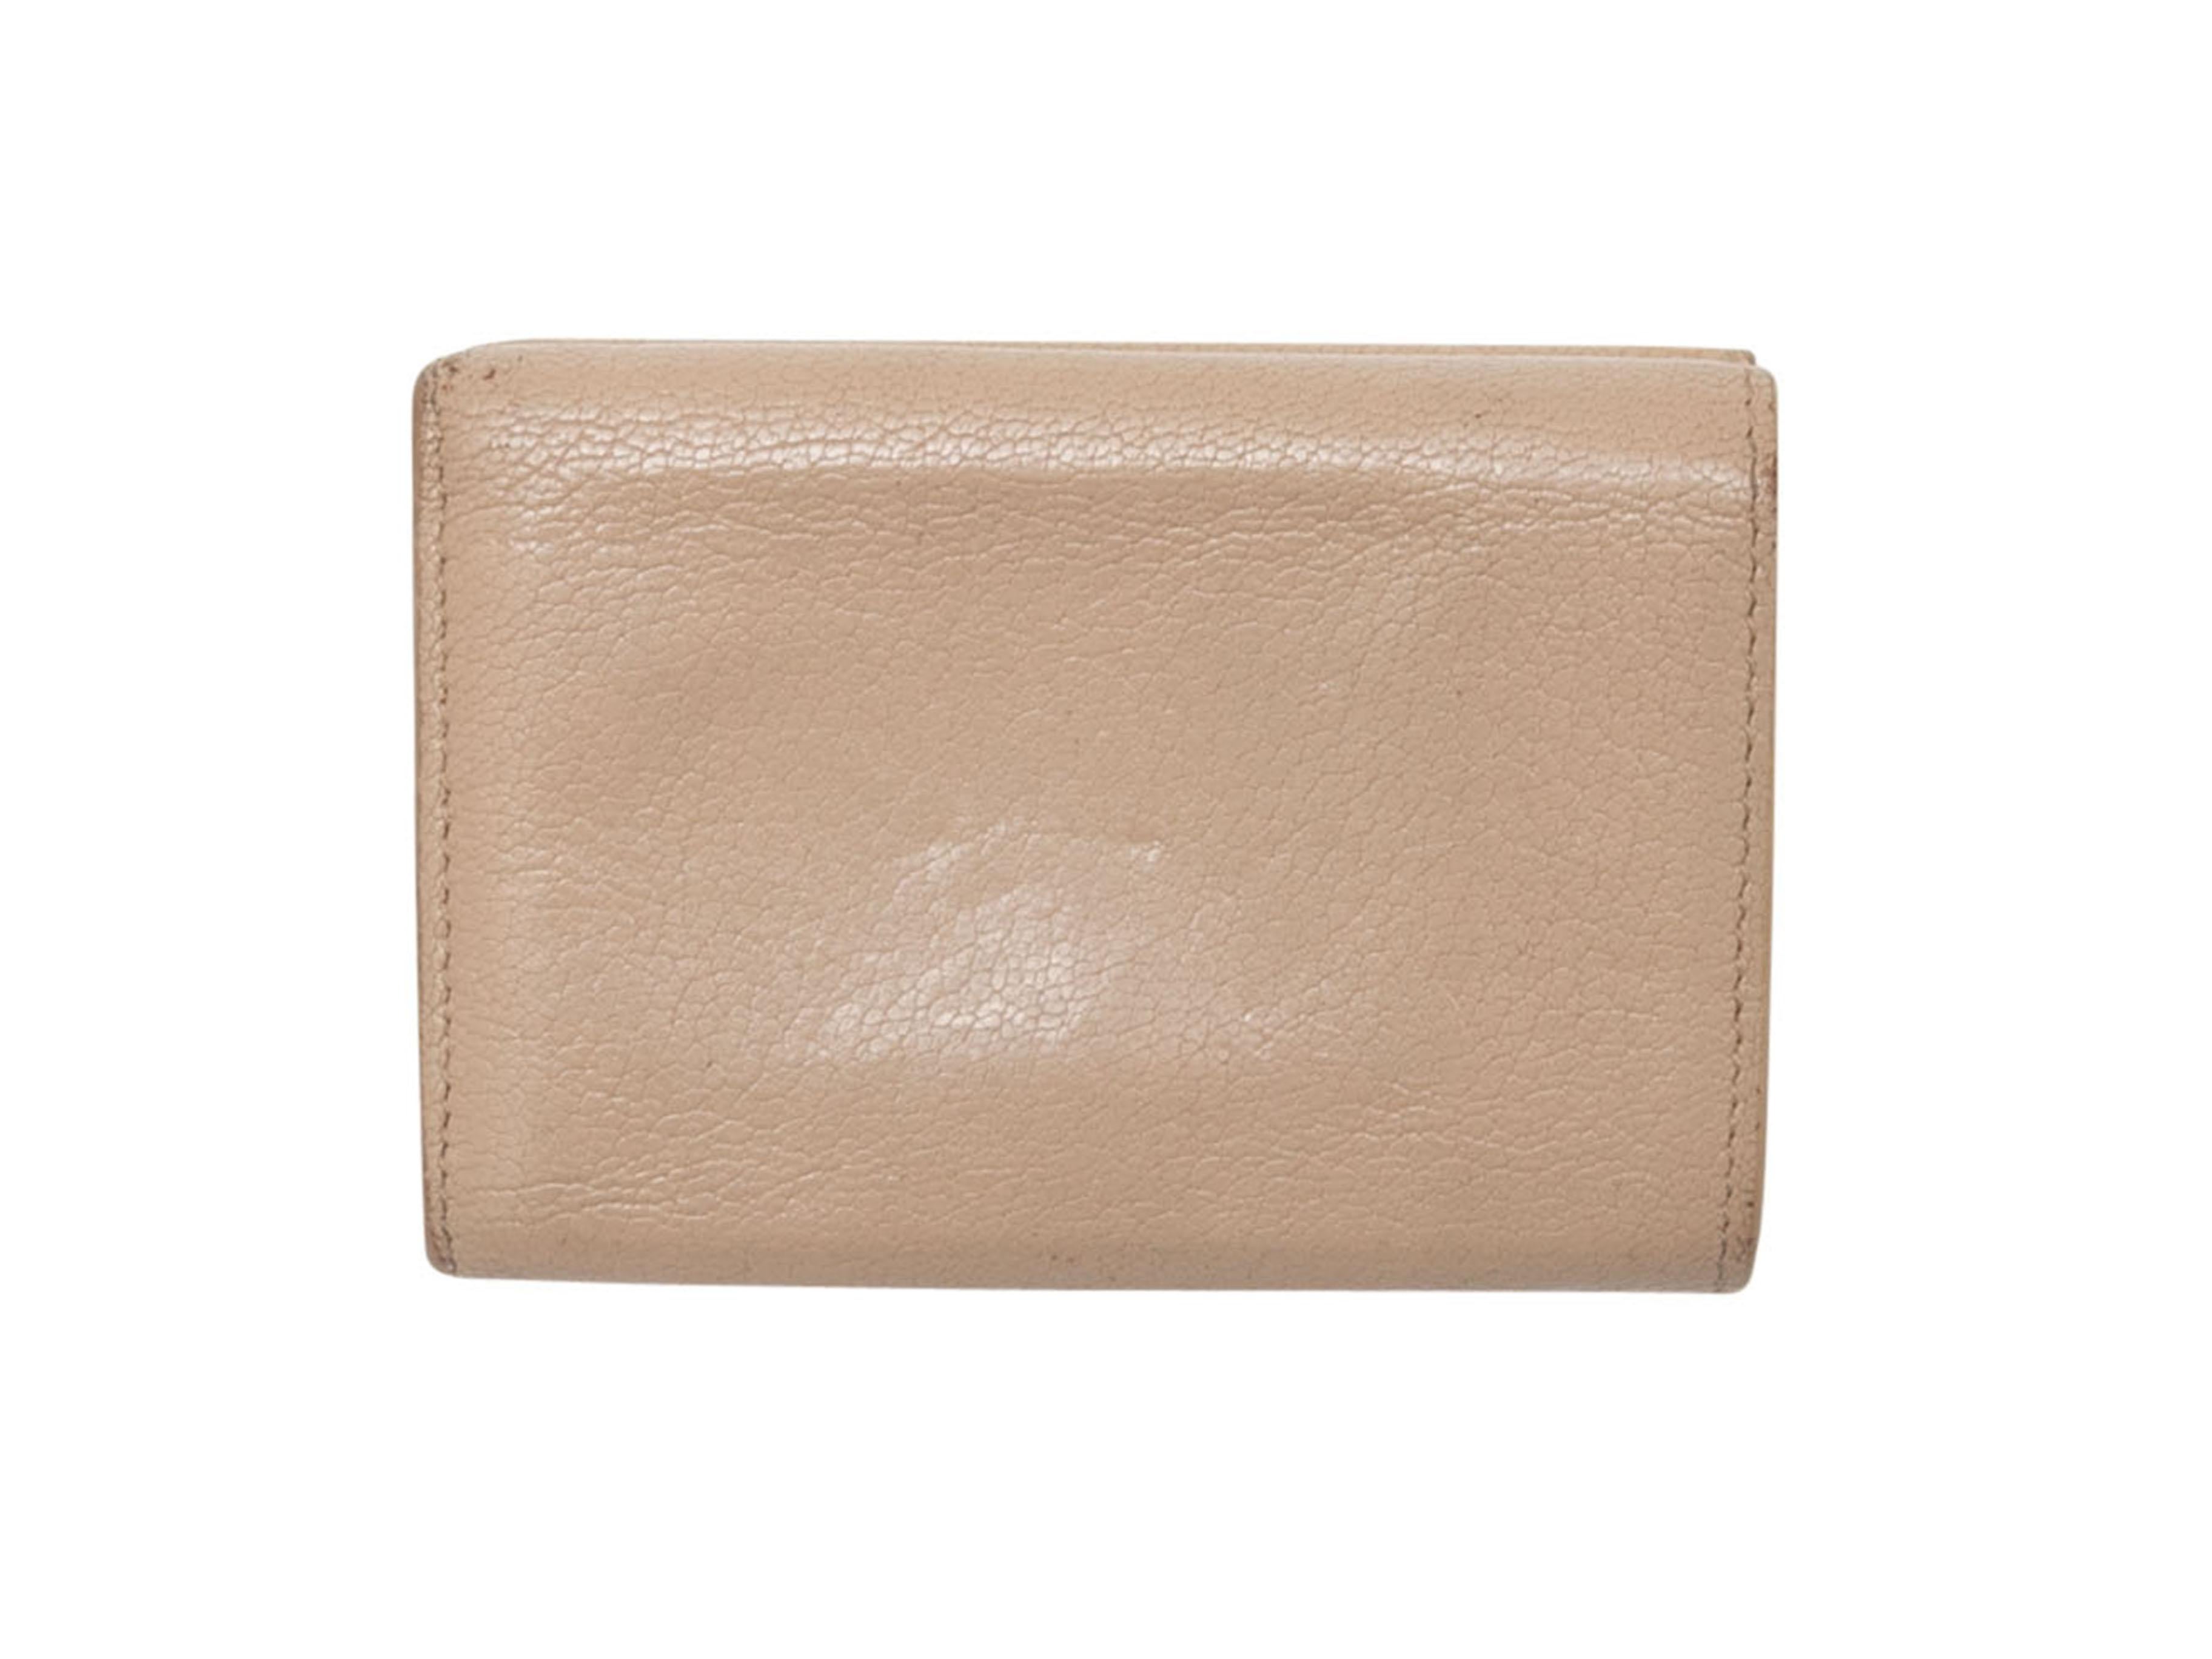 Beigefarbene Neo Classic Mini Geldbörse aus Leder von Balenciaga. Goldfarbene Hardware. Innenliegende Karten- und Geldfächer. Reißverschluss-Außentasche. 3